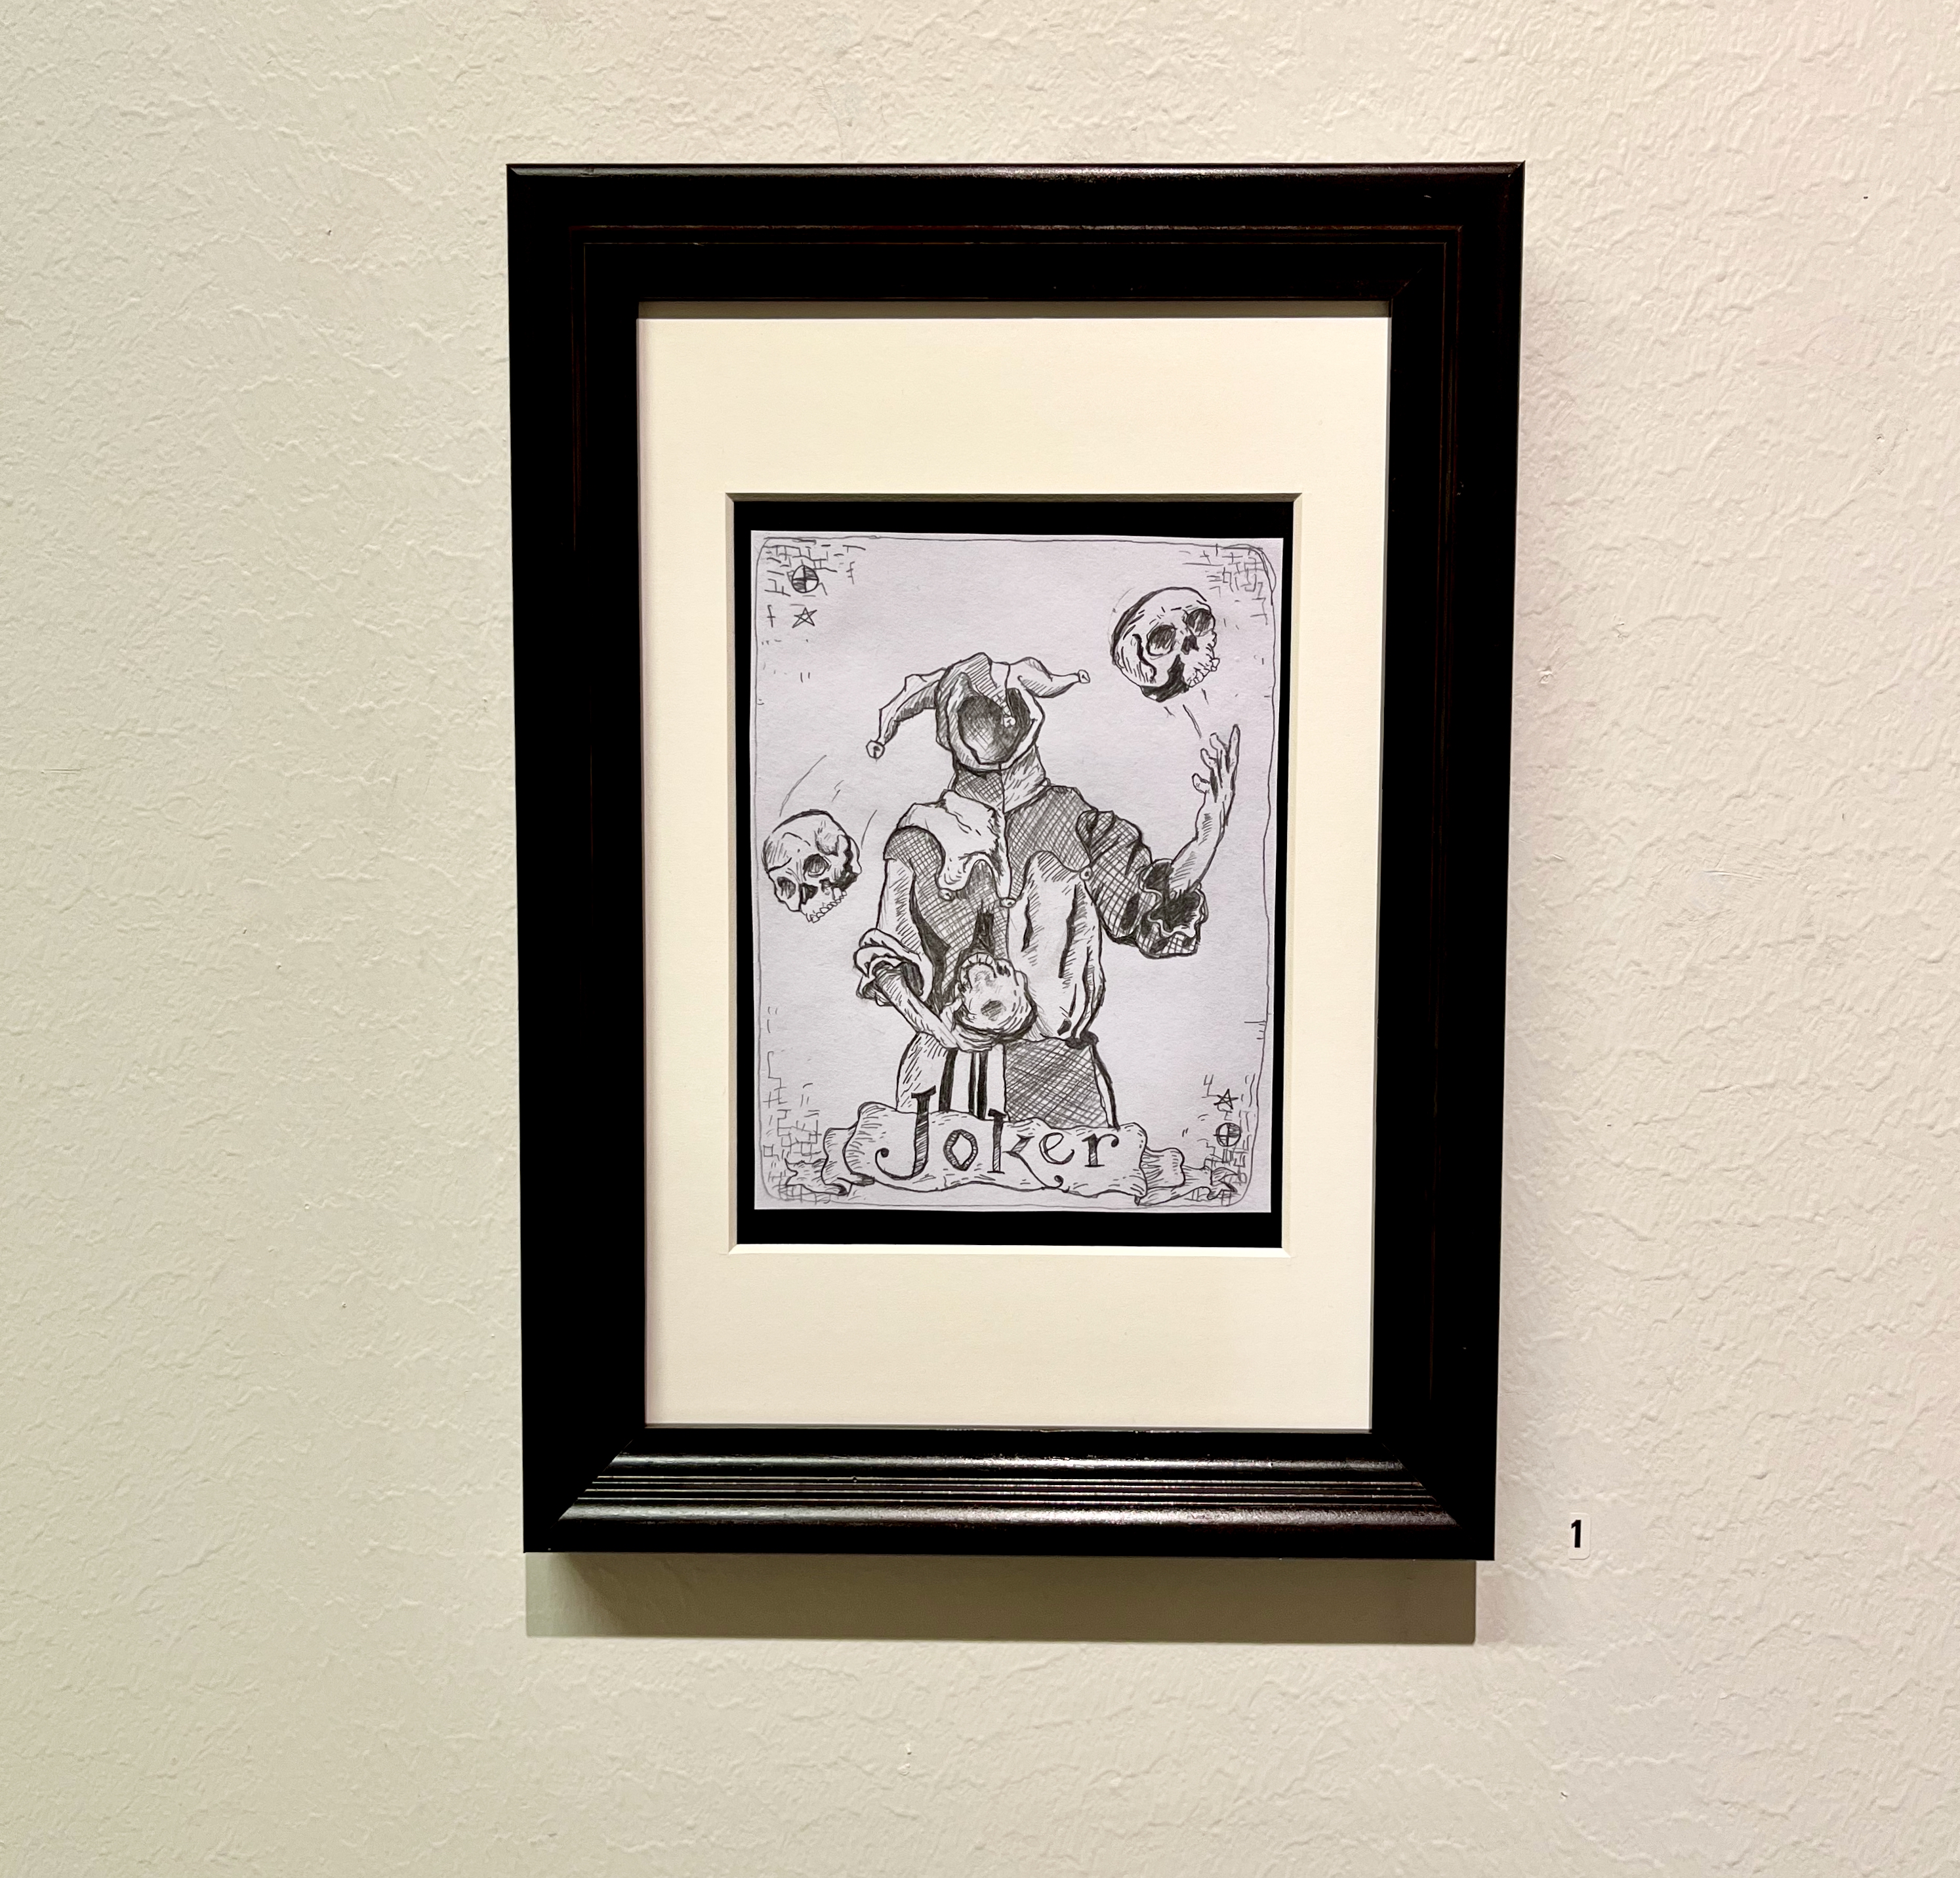 En figur utan ansikte i jokerkostym som jonglerar med tre dödsskallar. figuren är tecknad i gråtoner med blyerts och kol på en vit pappersbakgrund.